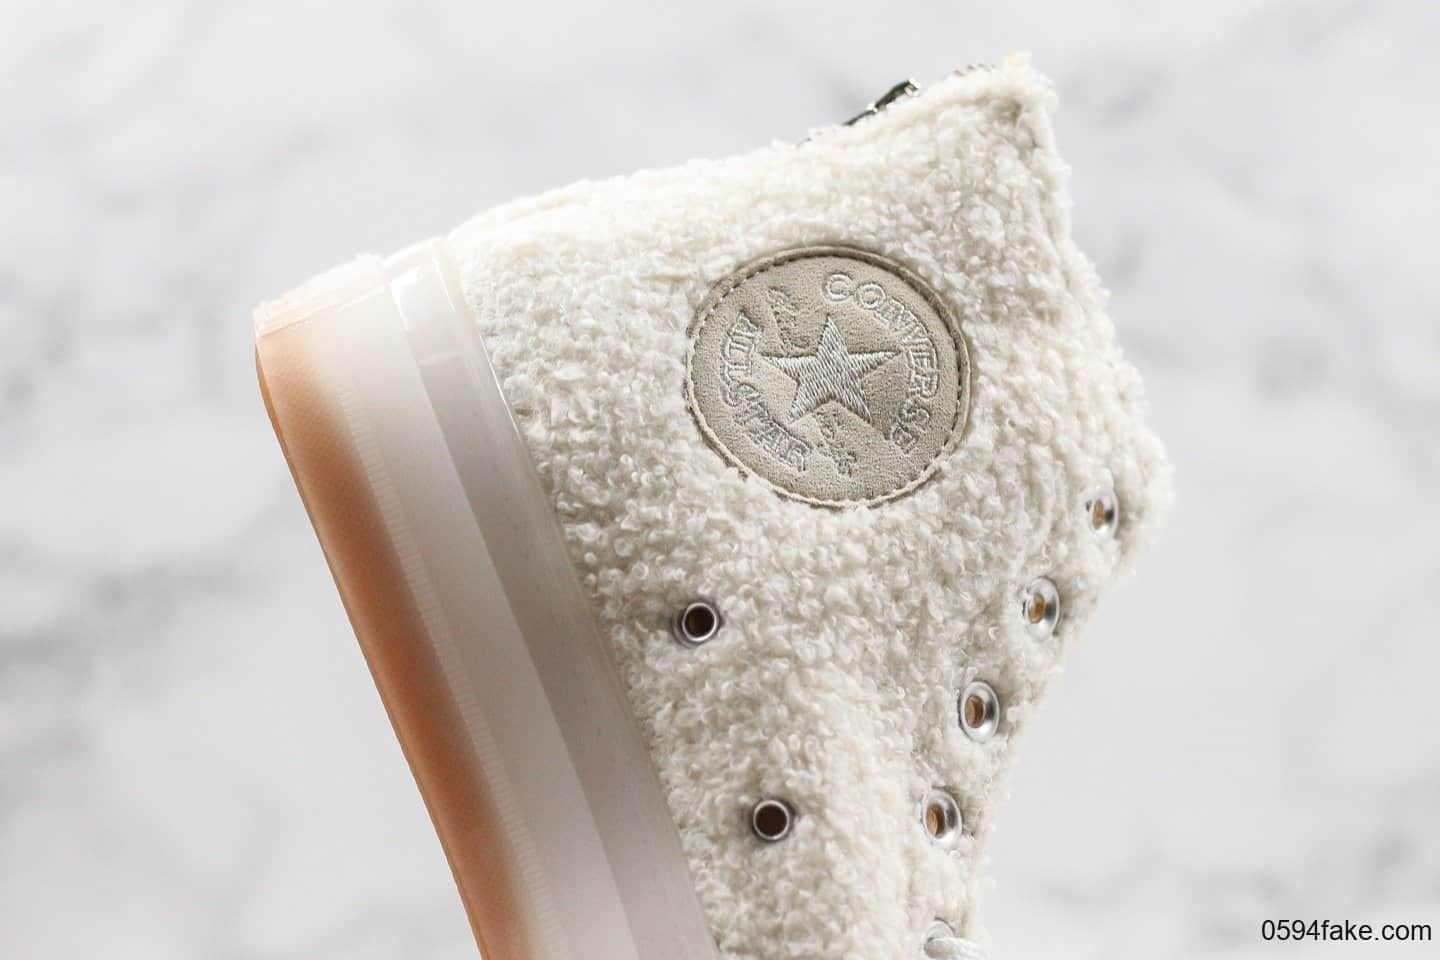 匡威Converse All Star Hi Faux Fur Sneaker明星签订款公司级版本绒毛丝果冻底阴阳鞋舌设计